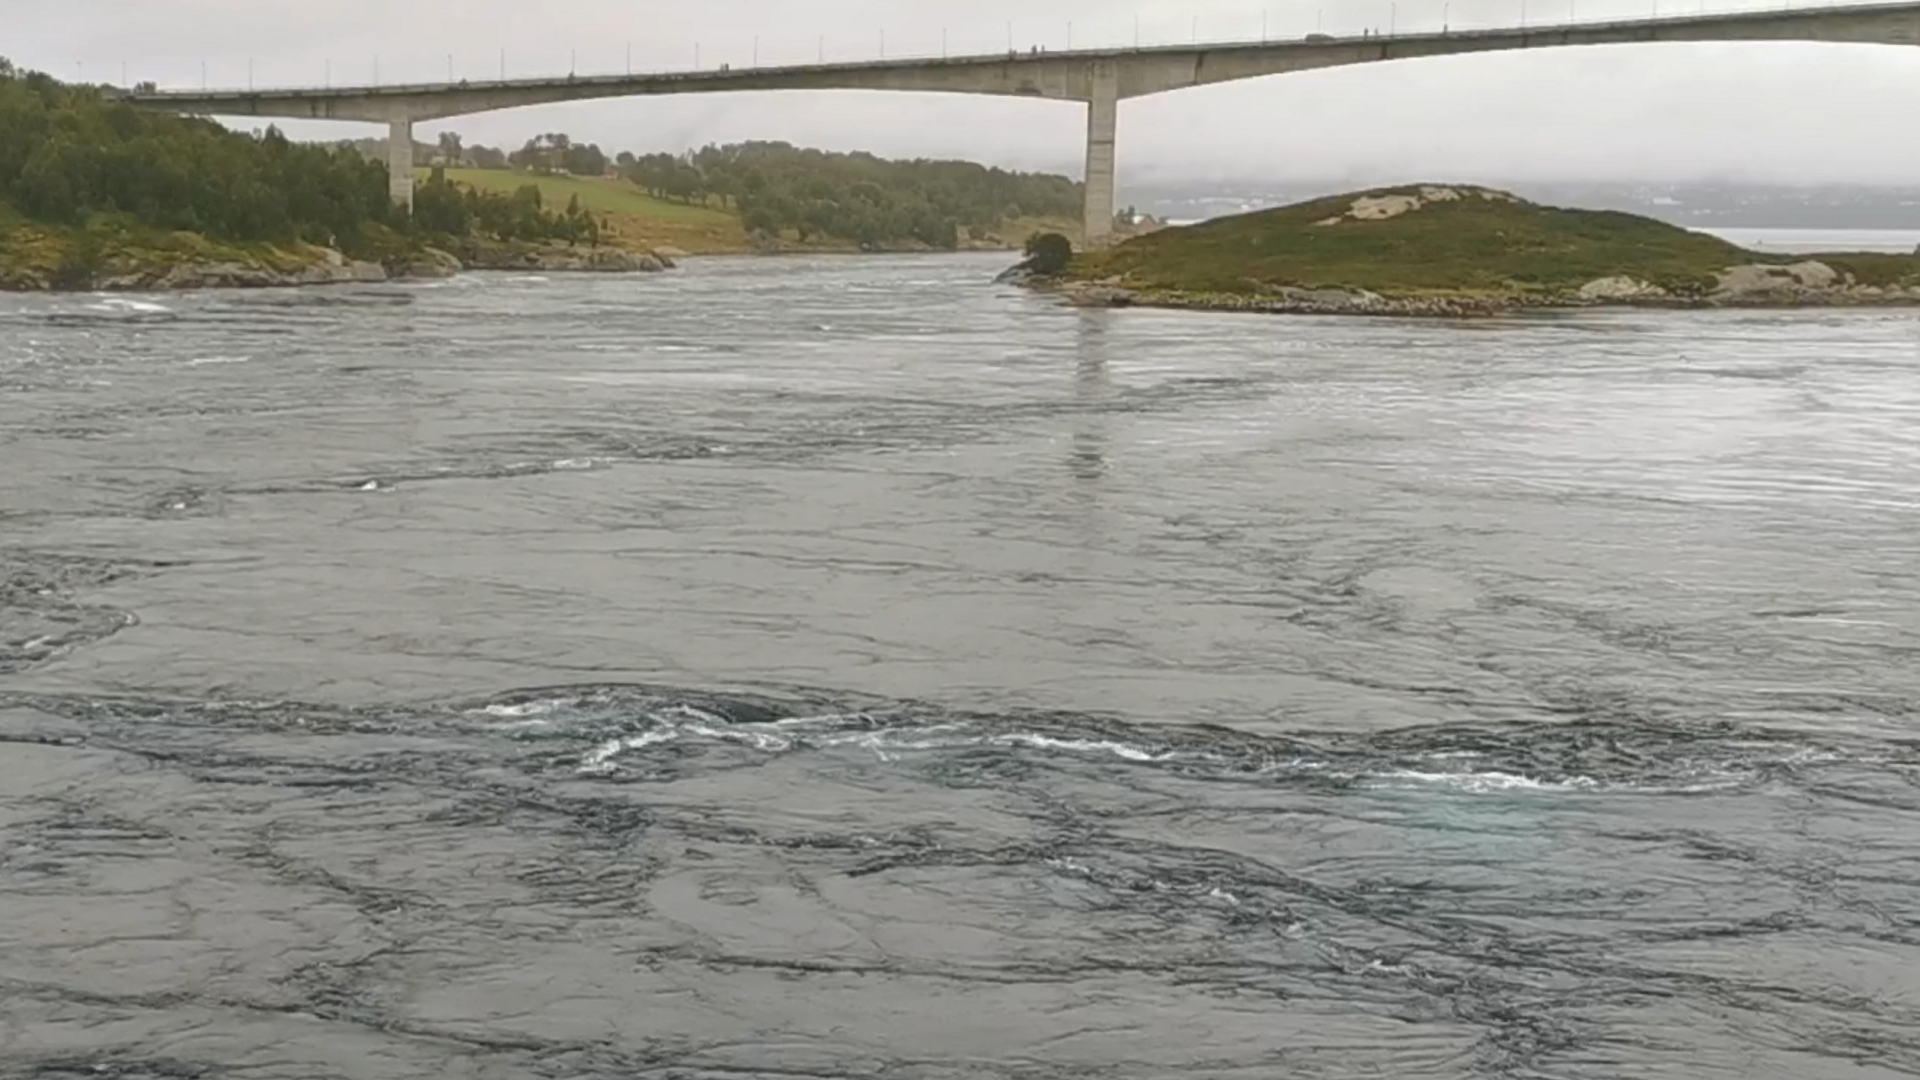 Im Vordergrund beim Angeln zu beobachtende, faszinierende Wasserbewegungen und im Hintergrund die Brücke über den Saltstraumen bei Bodø